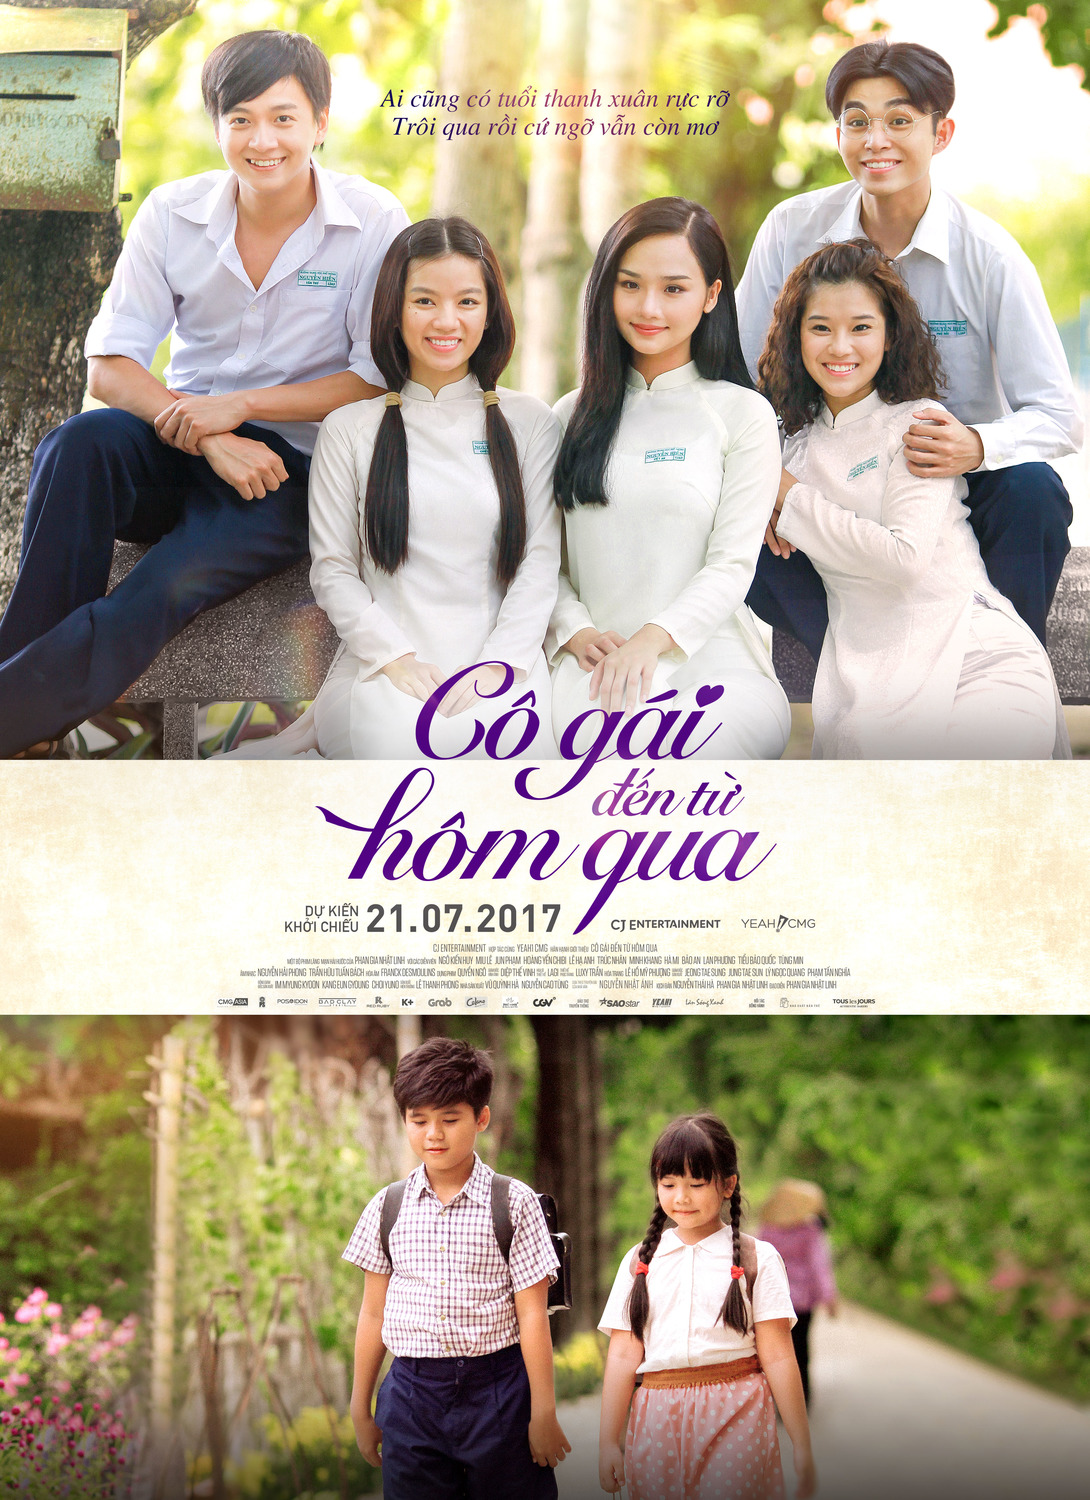 Extra Large Movie Poster Image for Co gai den tu hom qua (#1 of 14)